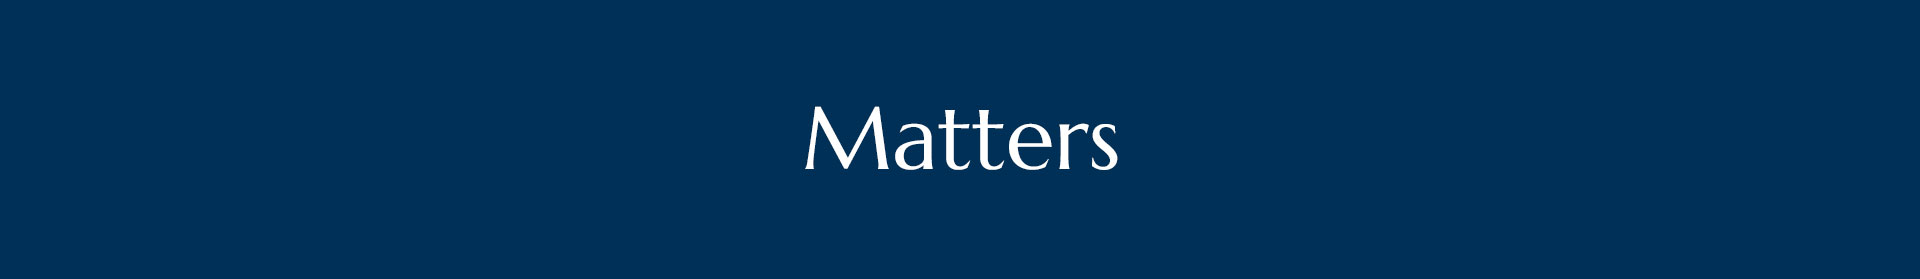 matters2